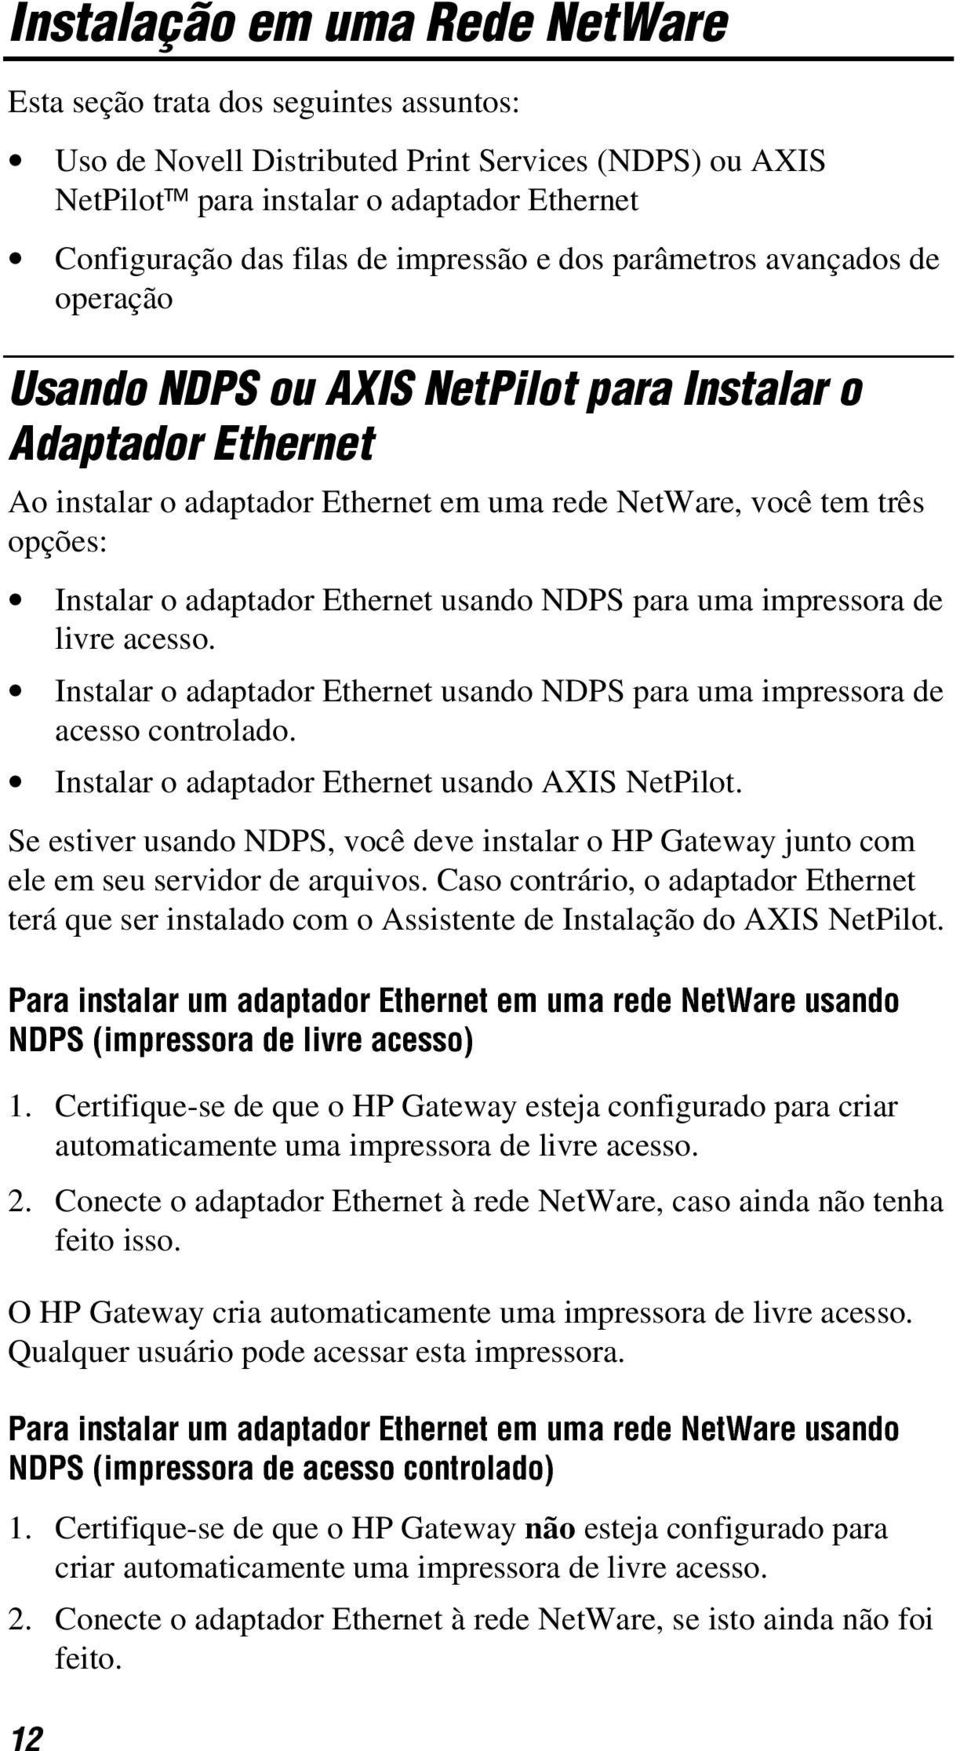 adaptador Ethernet usando NDPS para uma impressora de livre acesso. Instalar o adaptador Ethernet usando NDPS para uma impressora de acesso controlado.